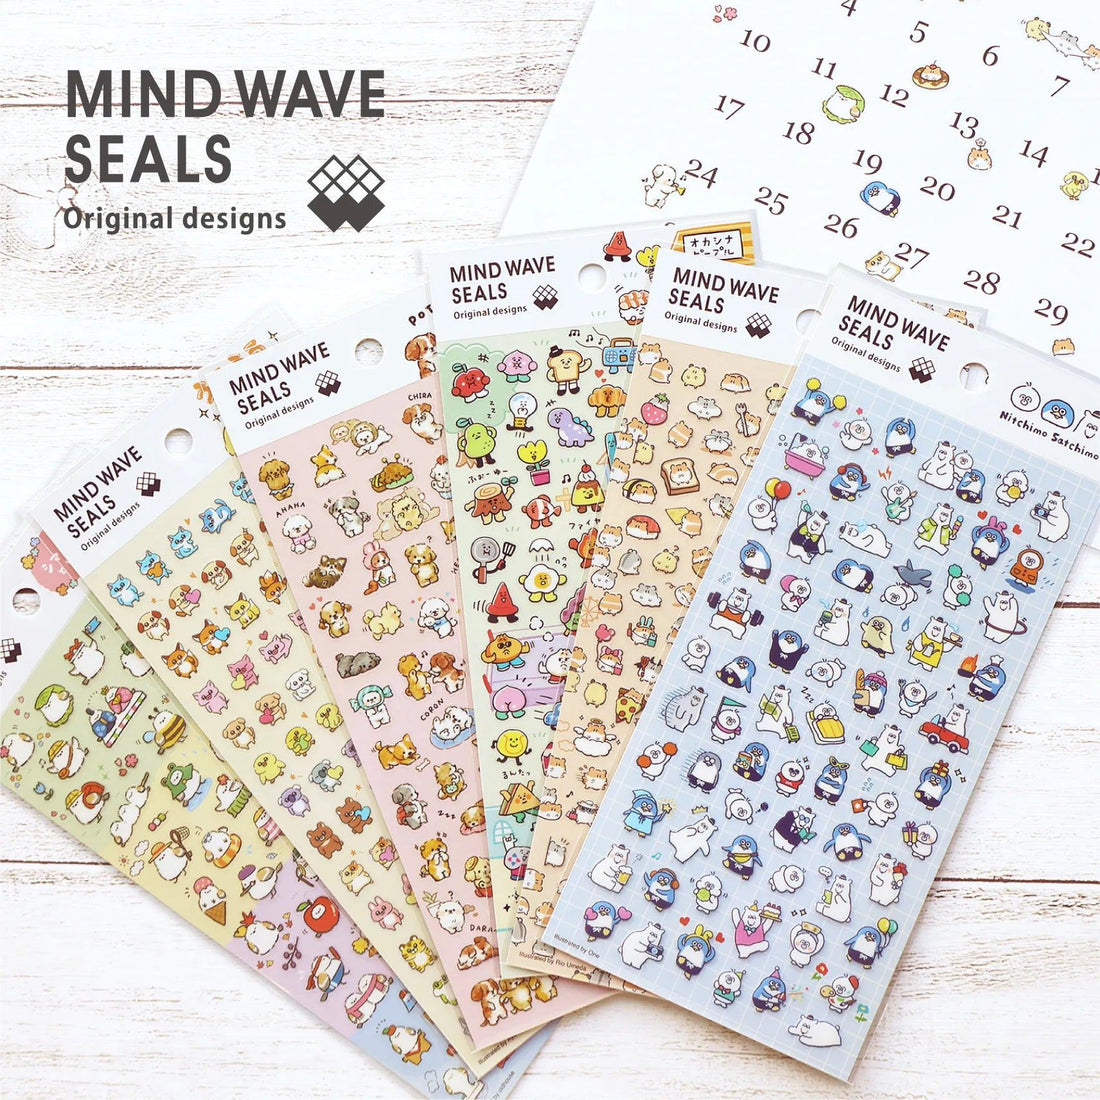 Mind Wave Seals - Nitchimo Satchimo - Techo Treats